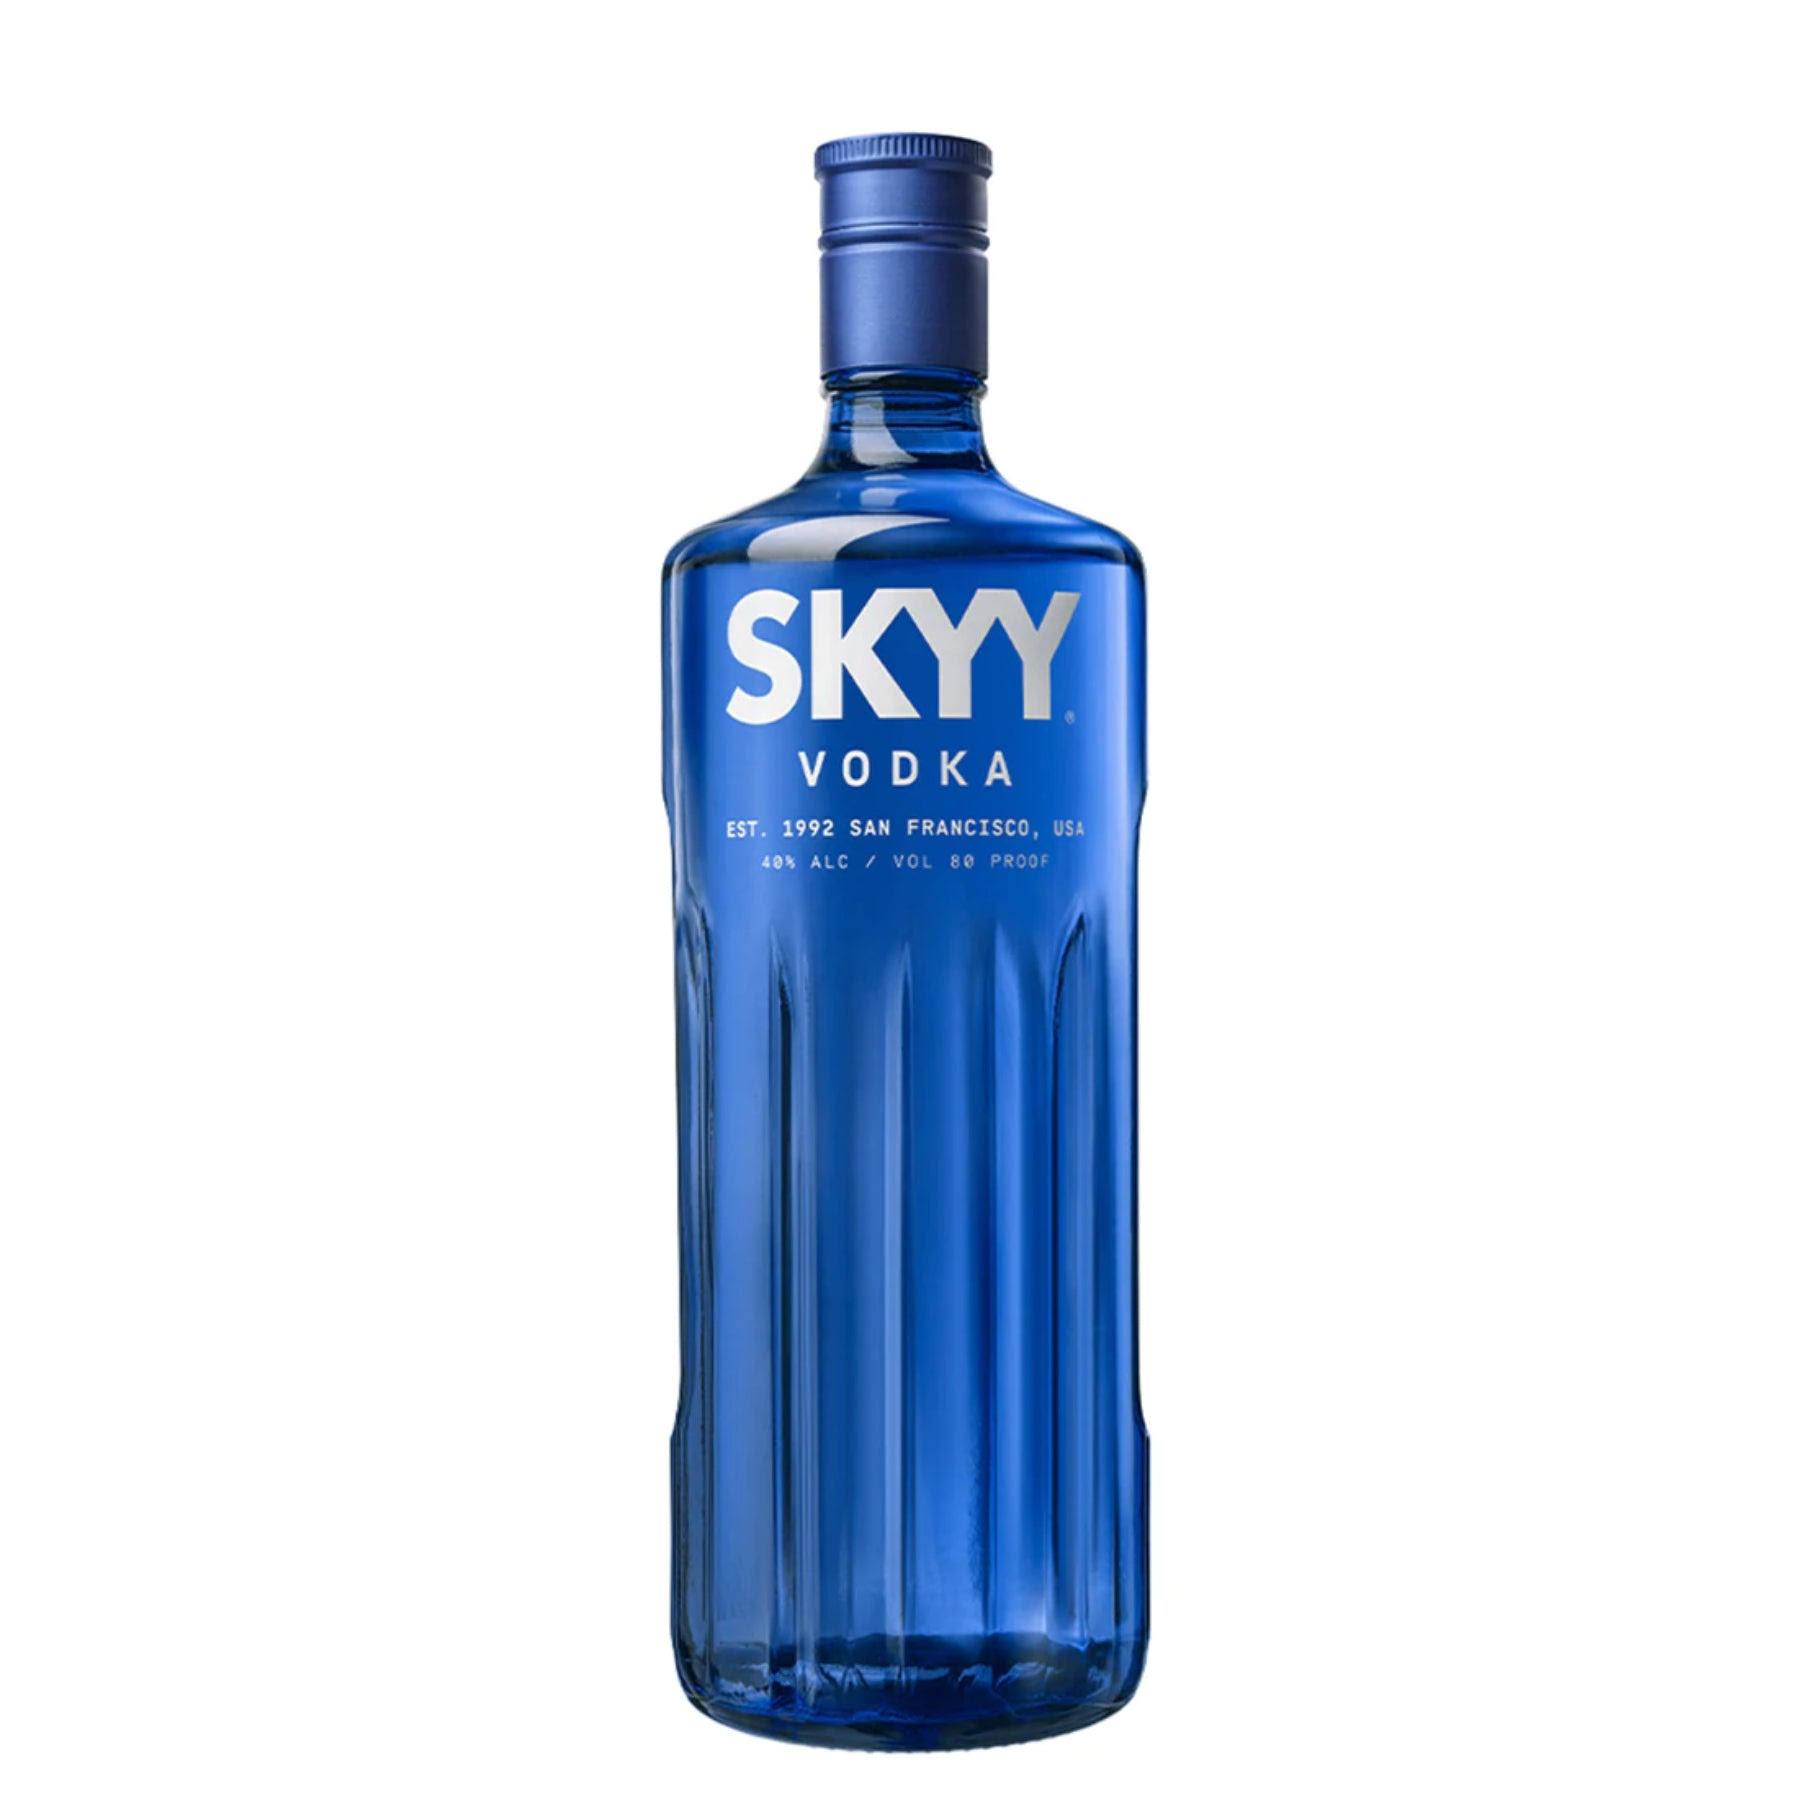 Skyy Vodka - 1.75 L bottle